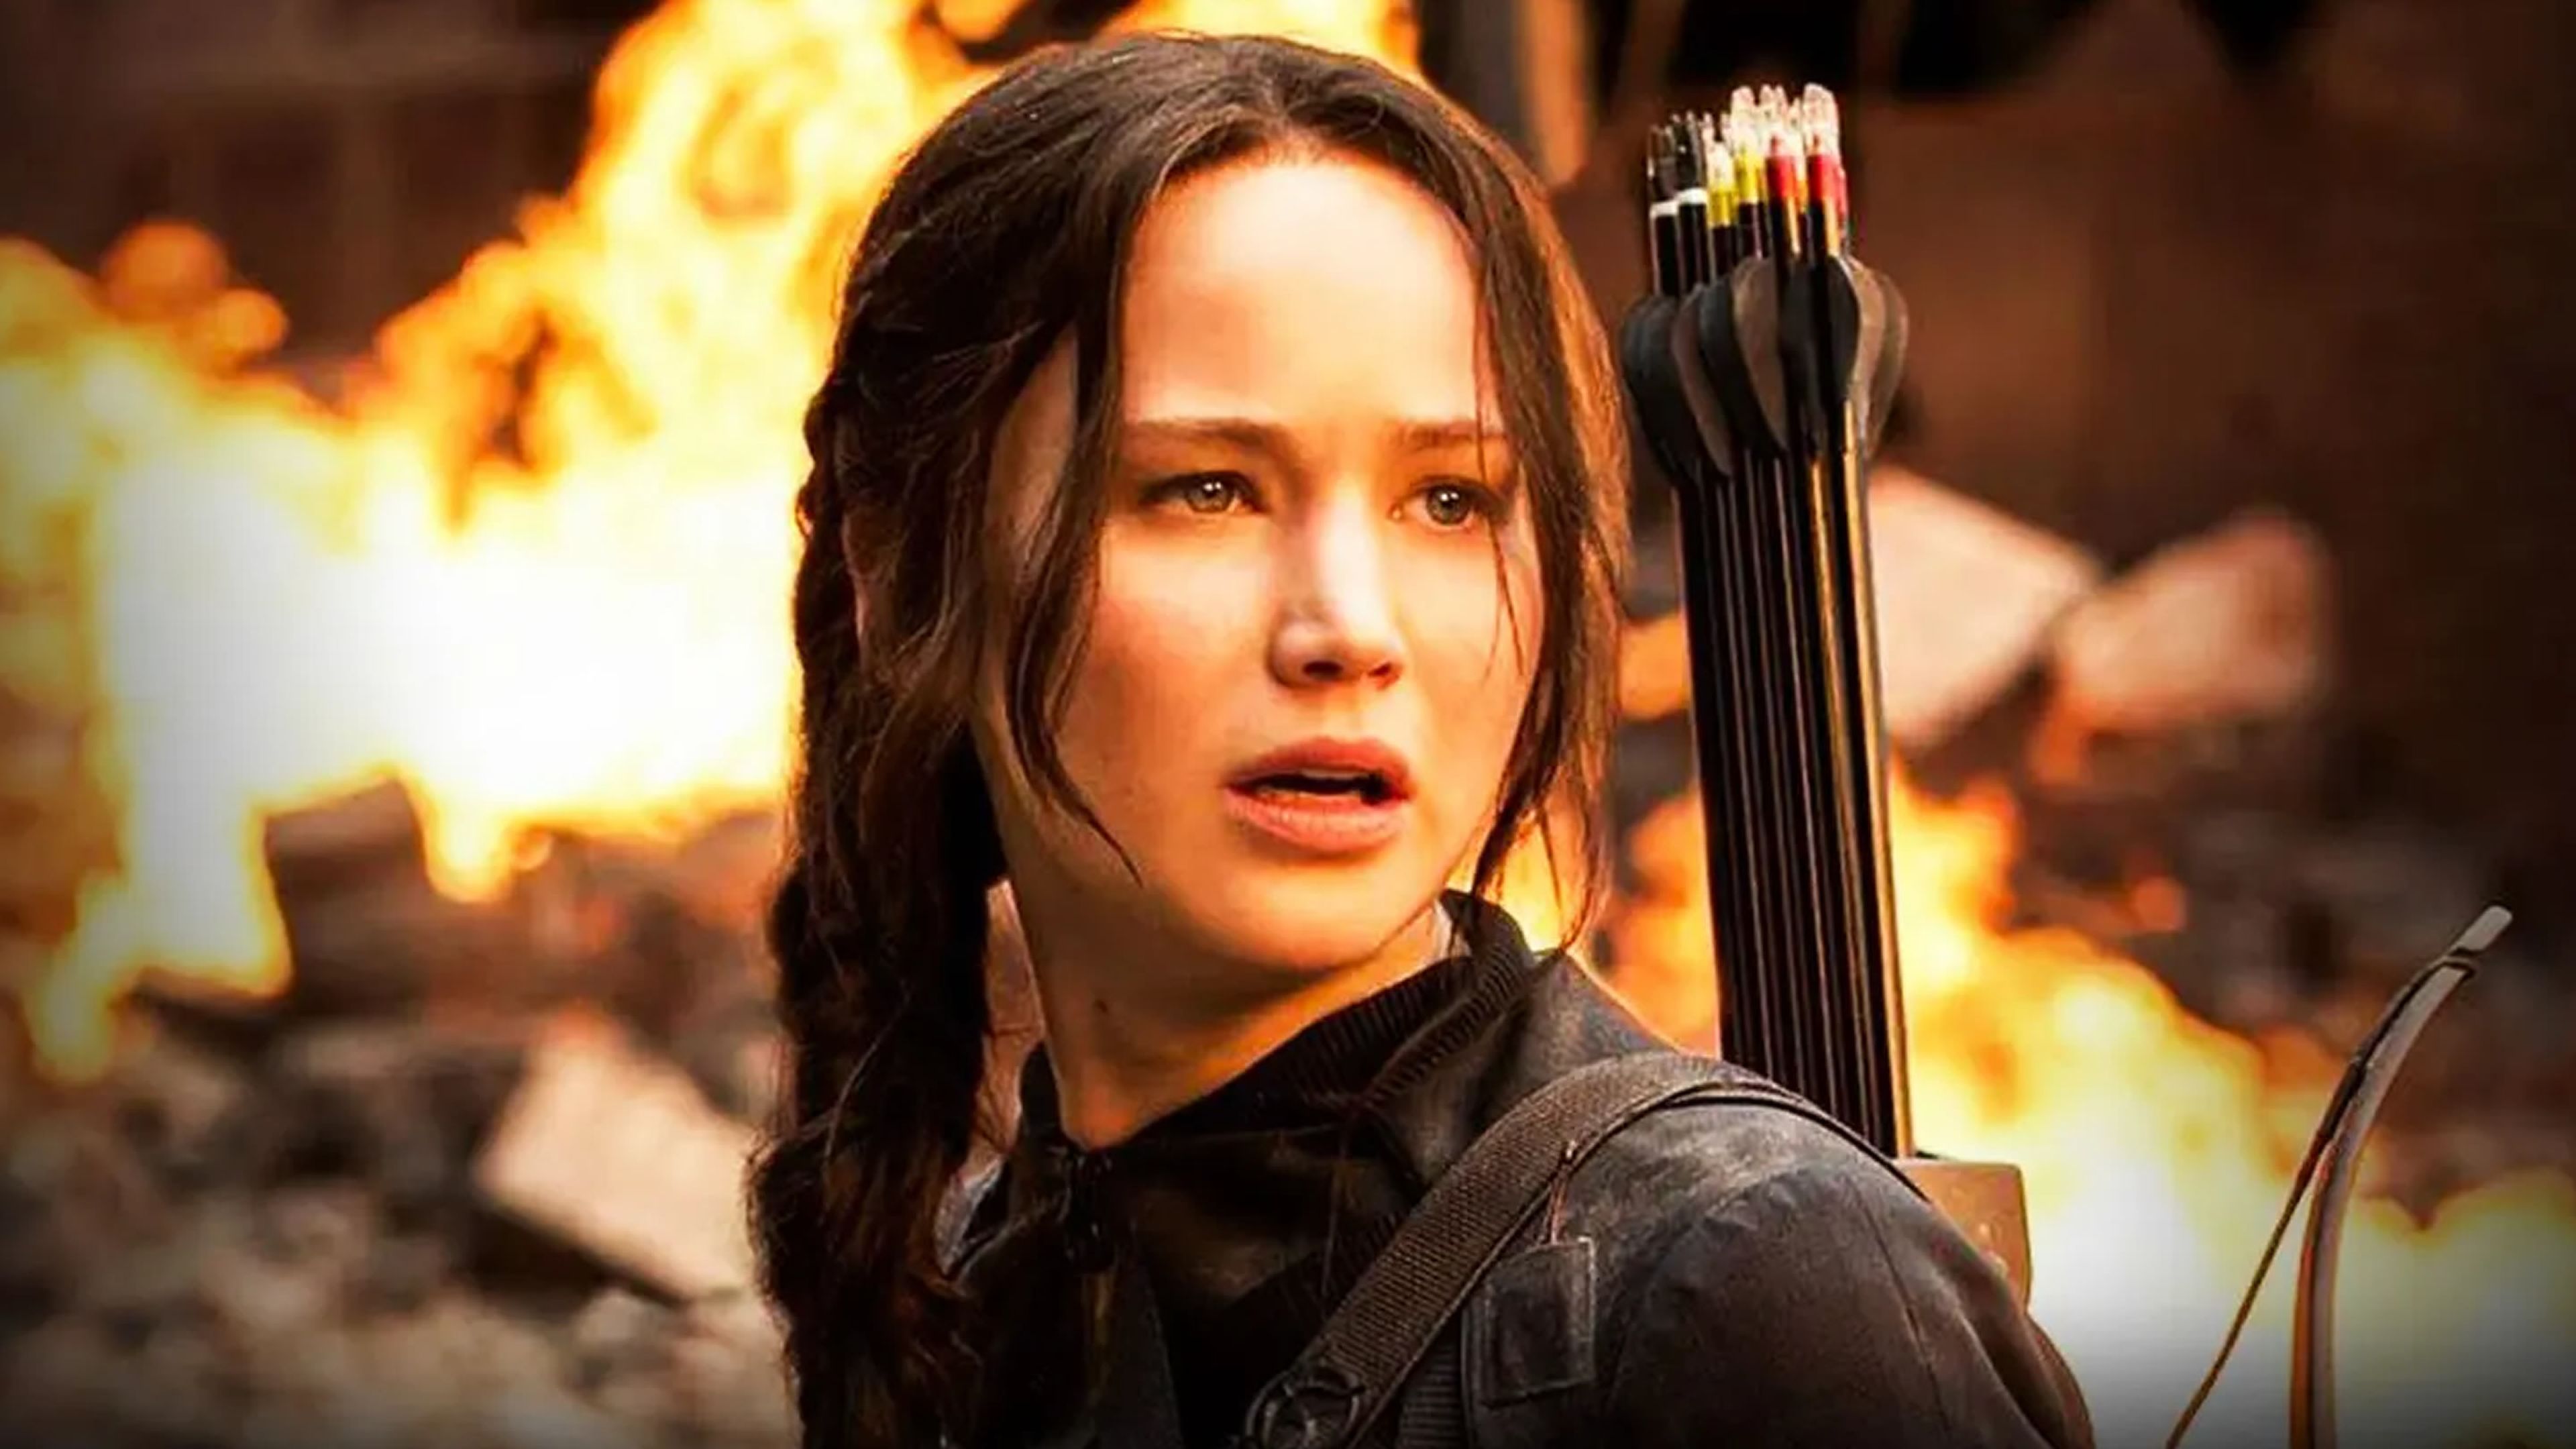 Los juegos del hambre - Katniss Everdeen (Jennifer Lawrence)